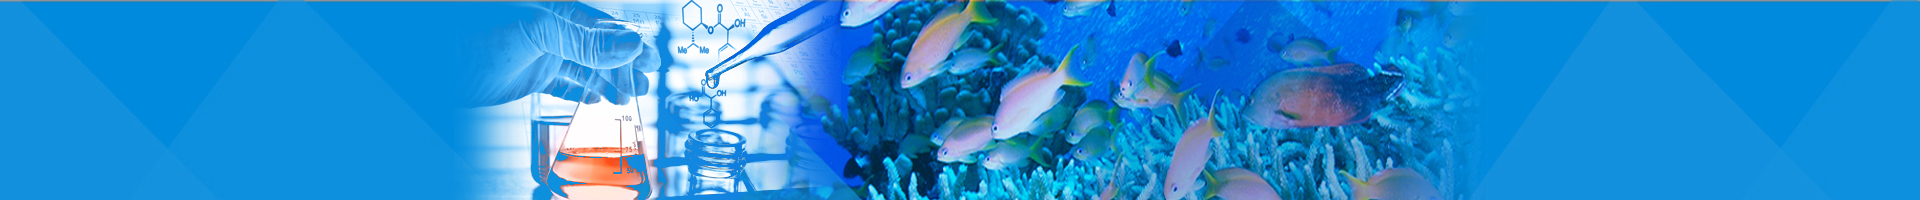 2013「全球石首魚保育研究平台」分類研習會